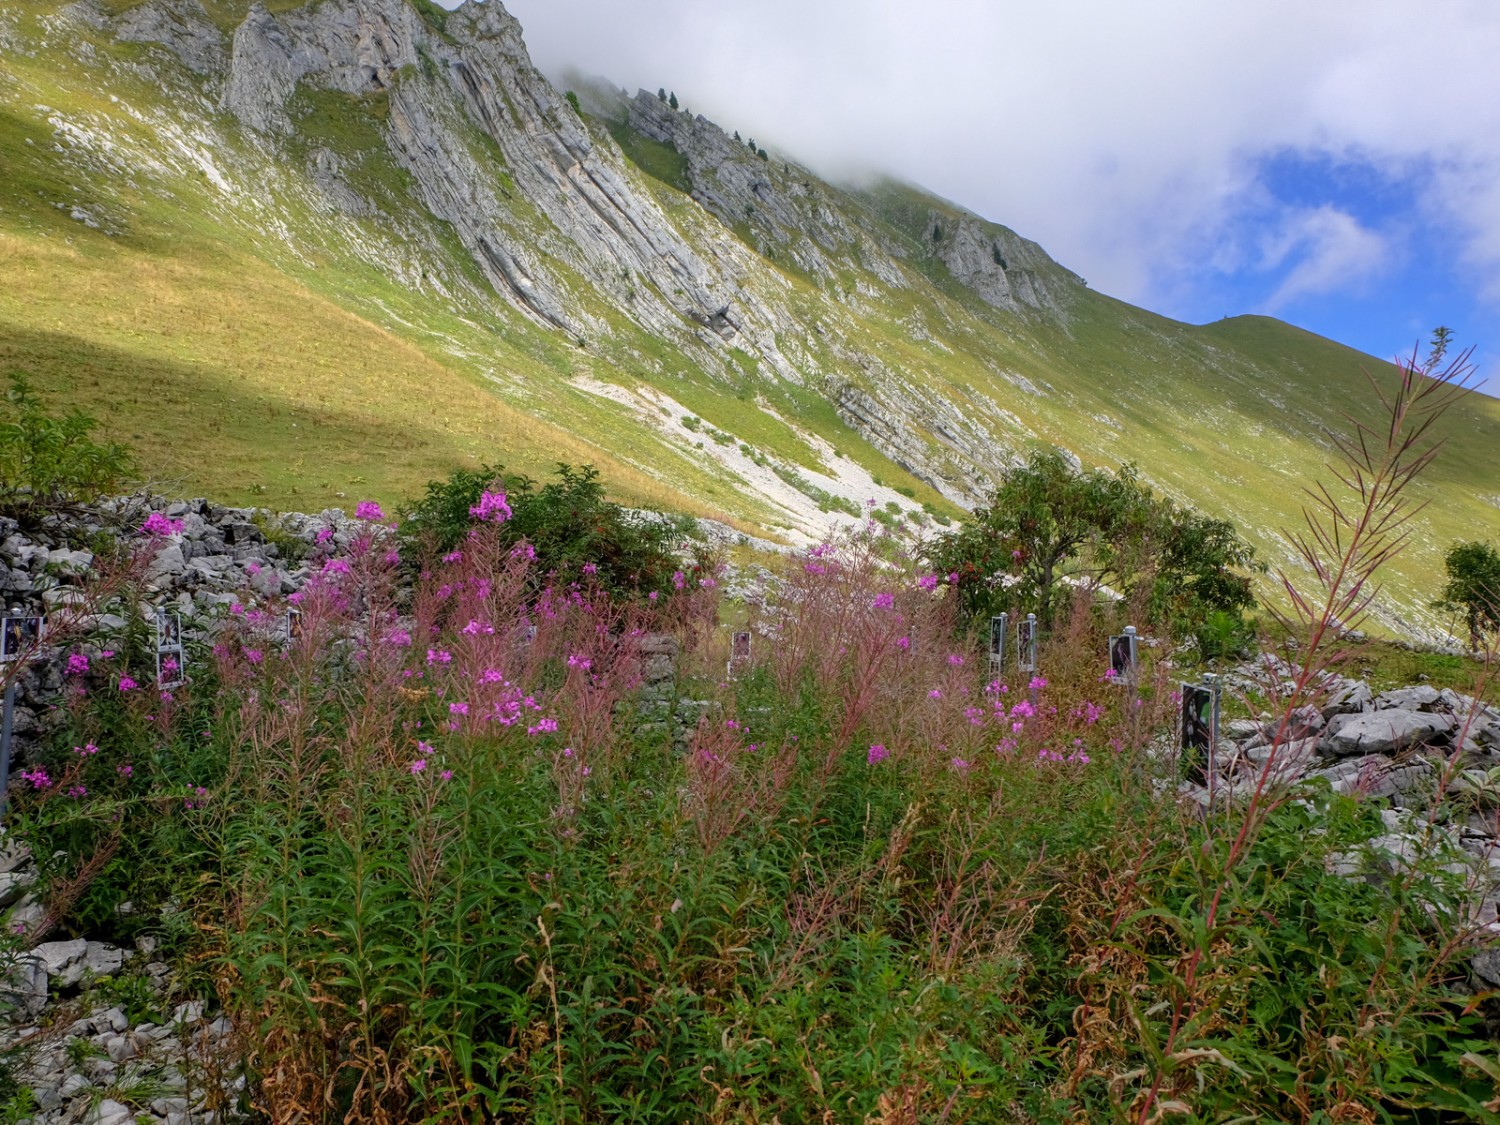 Là où se trouvait autrefois une cabane alpine, aujourd'hui l'épilobe s'épanouit, signe qu'il y avait une cheminée. Photo: Elsbeth Flüeler